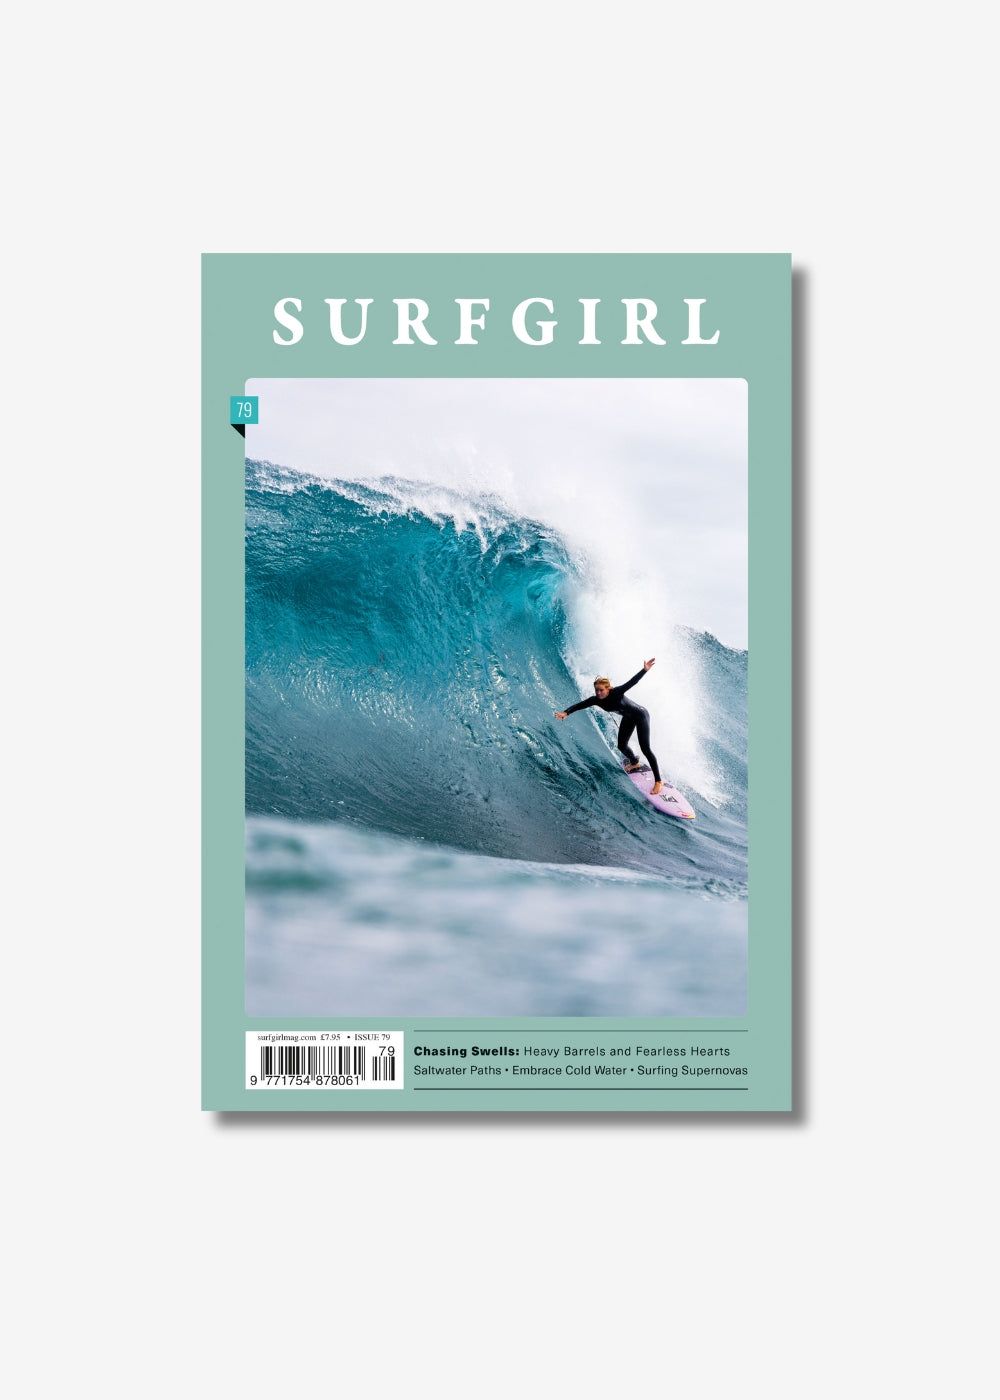 SurfGirl Magazine Issue 79